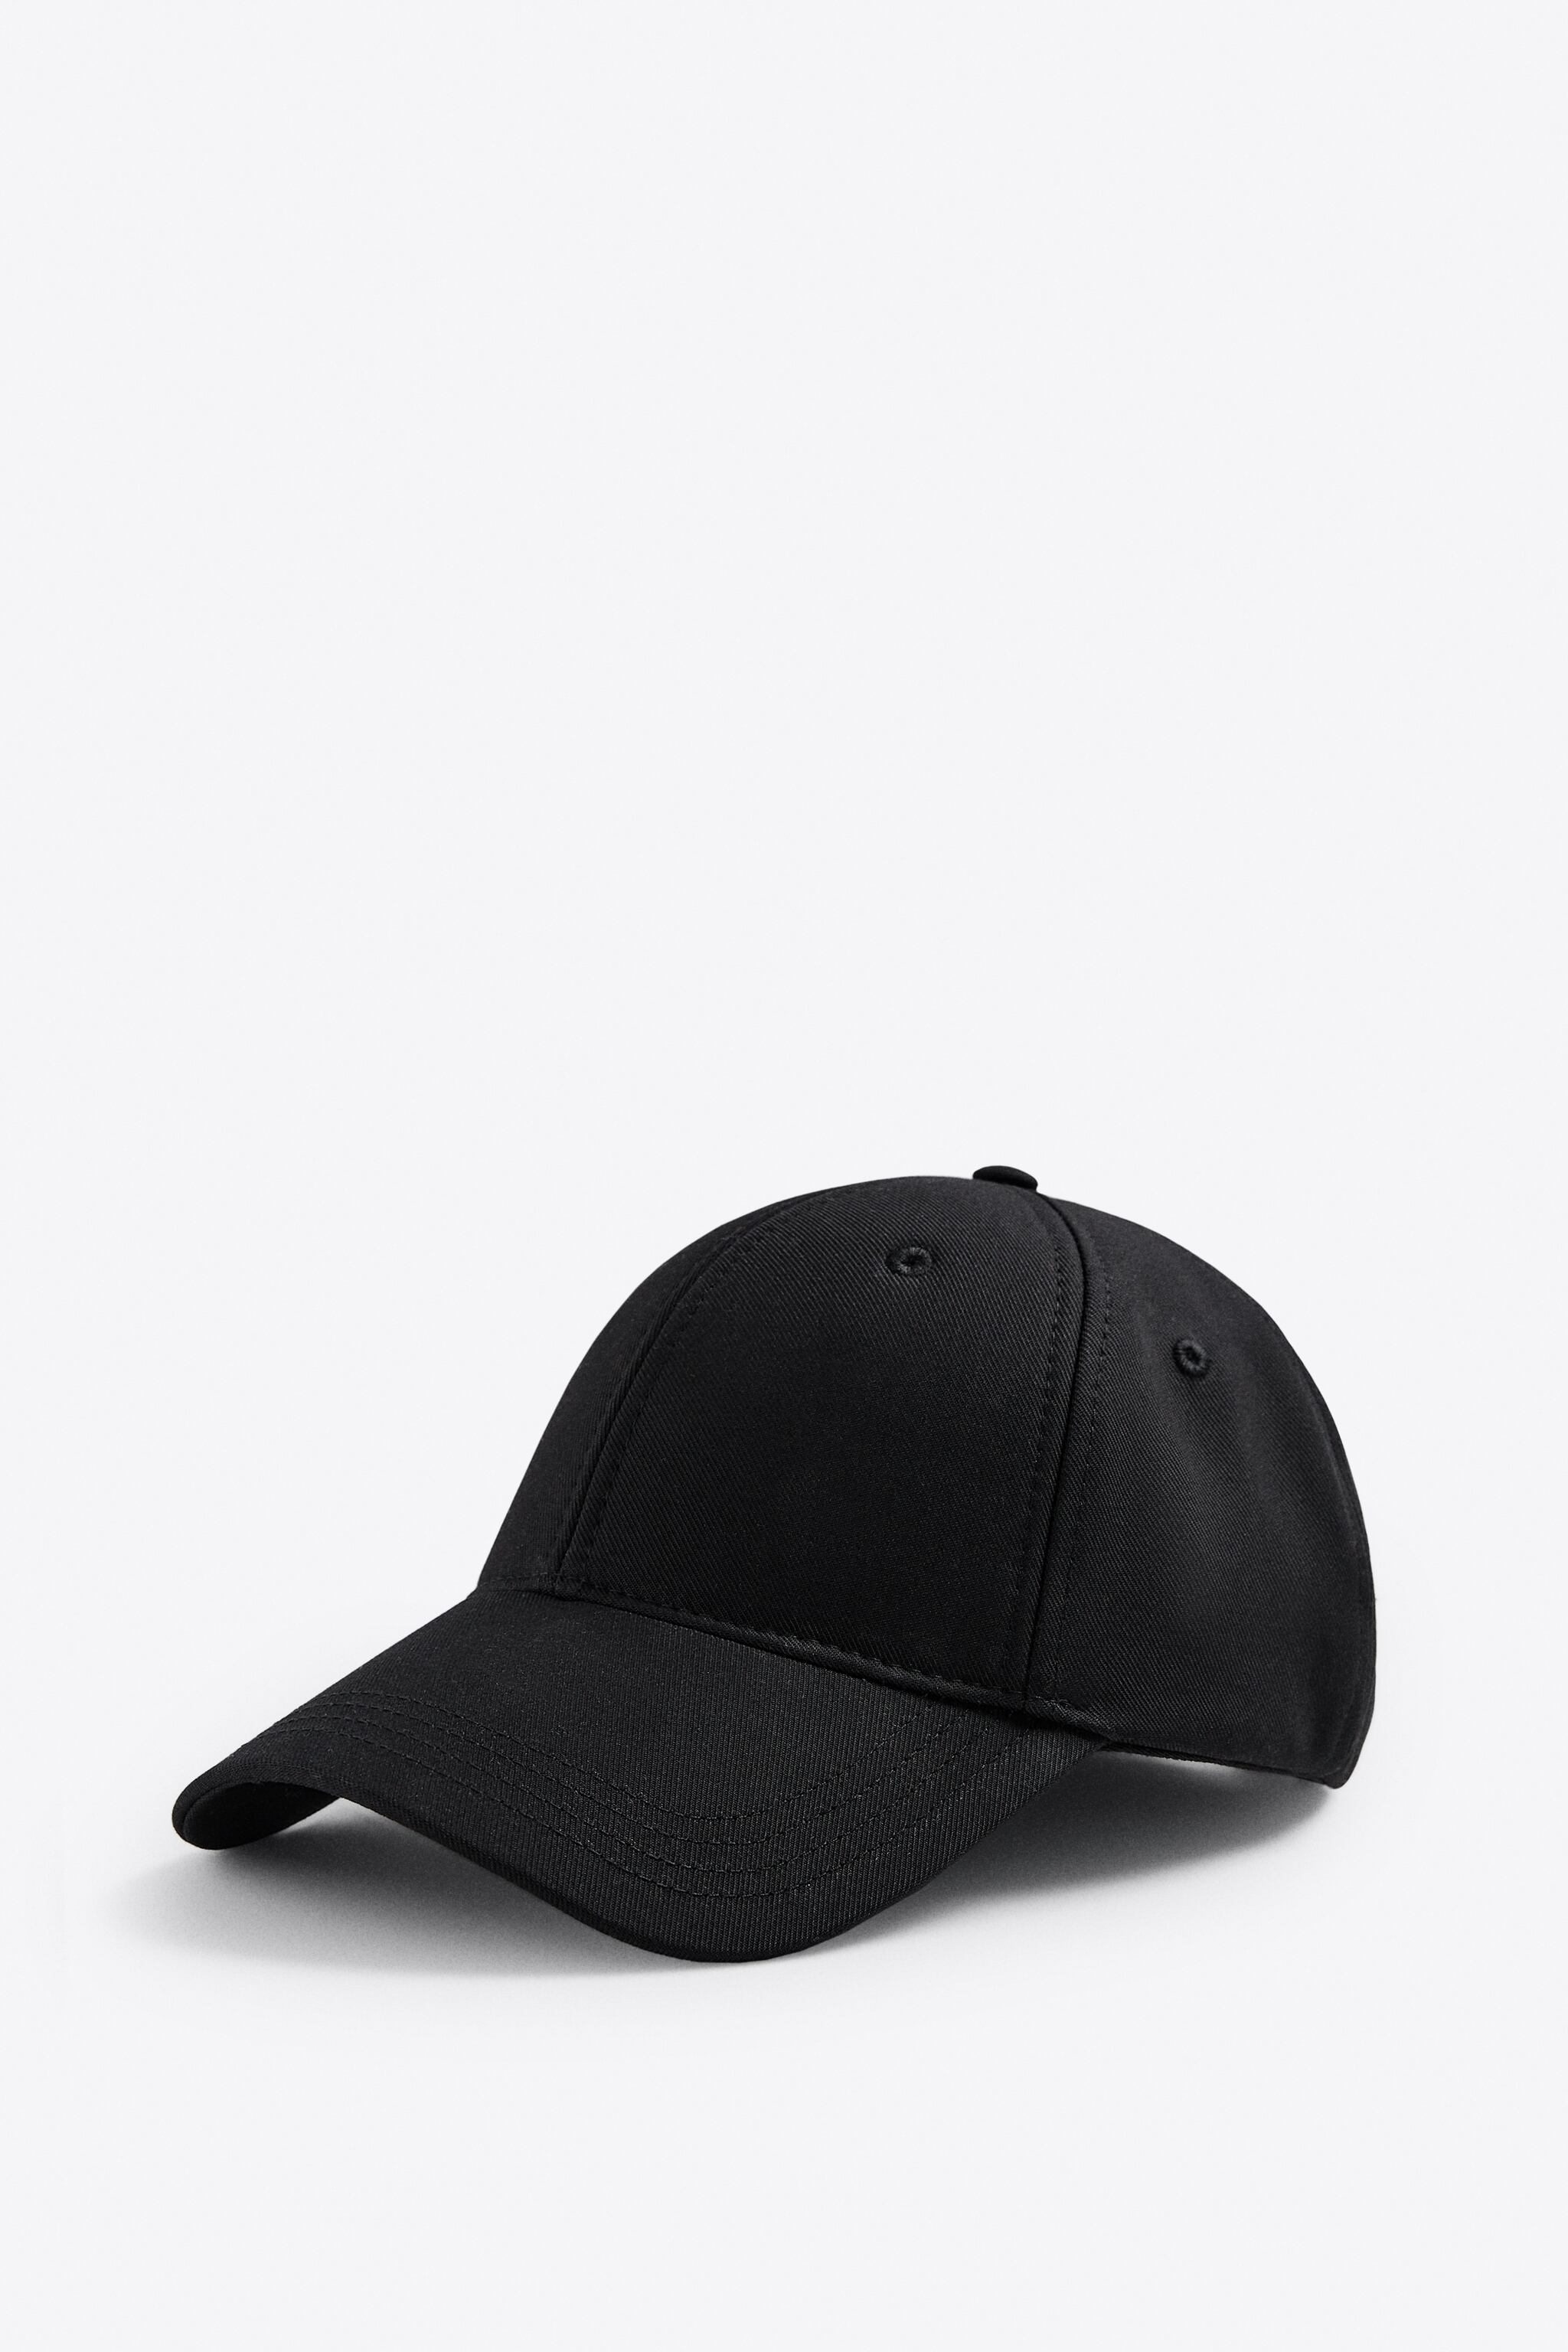 SOFT CAP